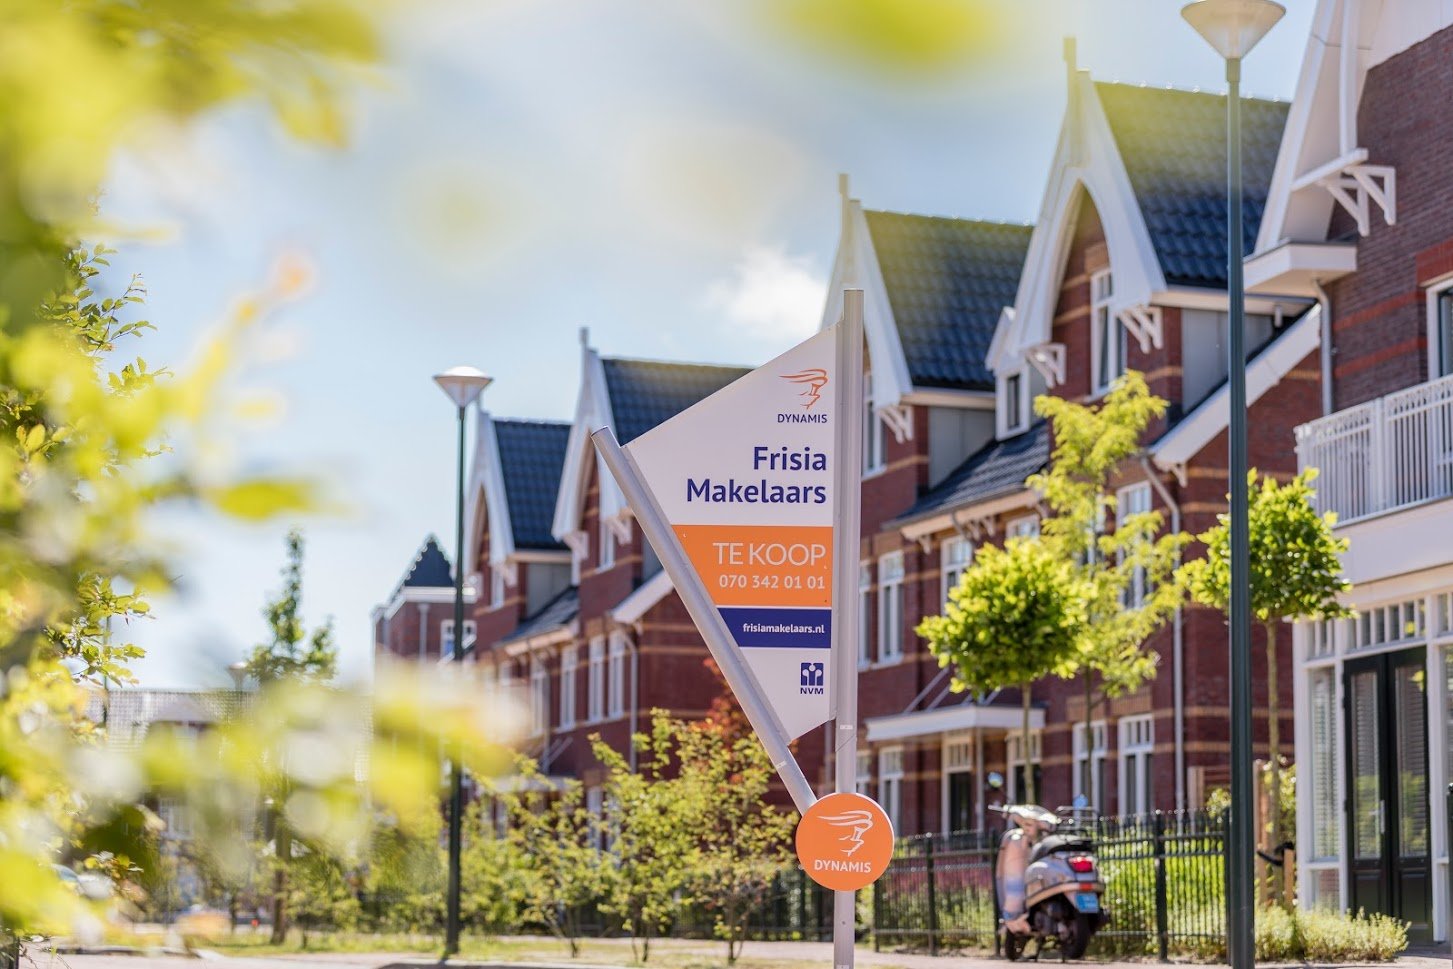 Volgens Dynamis zetten vooral in regio’s waar in de afgelopen jaren exorbitante prijsstijgingen plaatsvonden, zoals Amsterdam en Utrecht, meer eigenaren hun woning te koop. Ook buiten de Randstad is deze ontwikkeling zichtbaar.